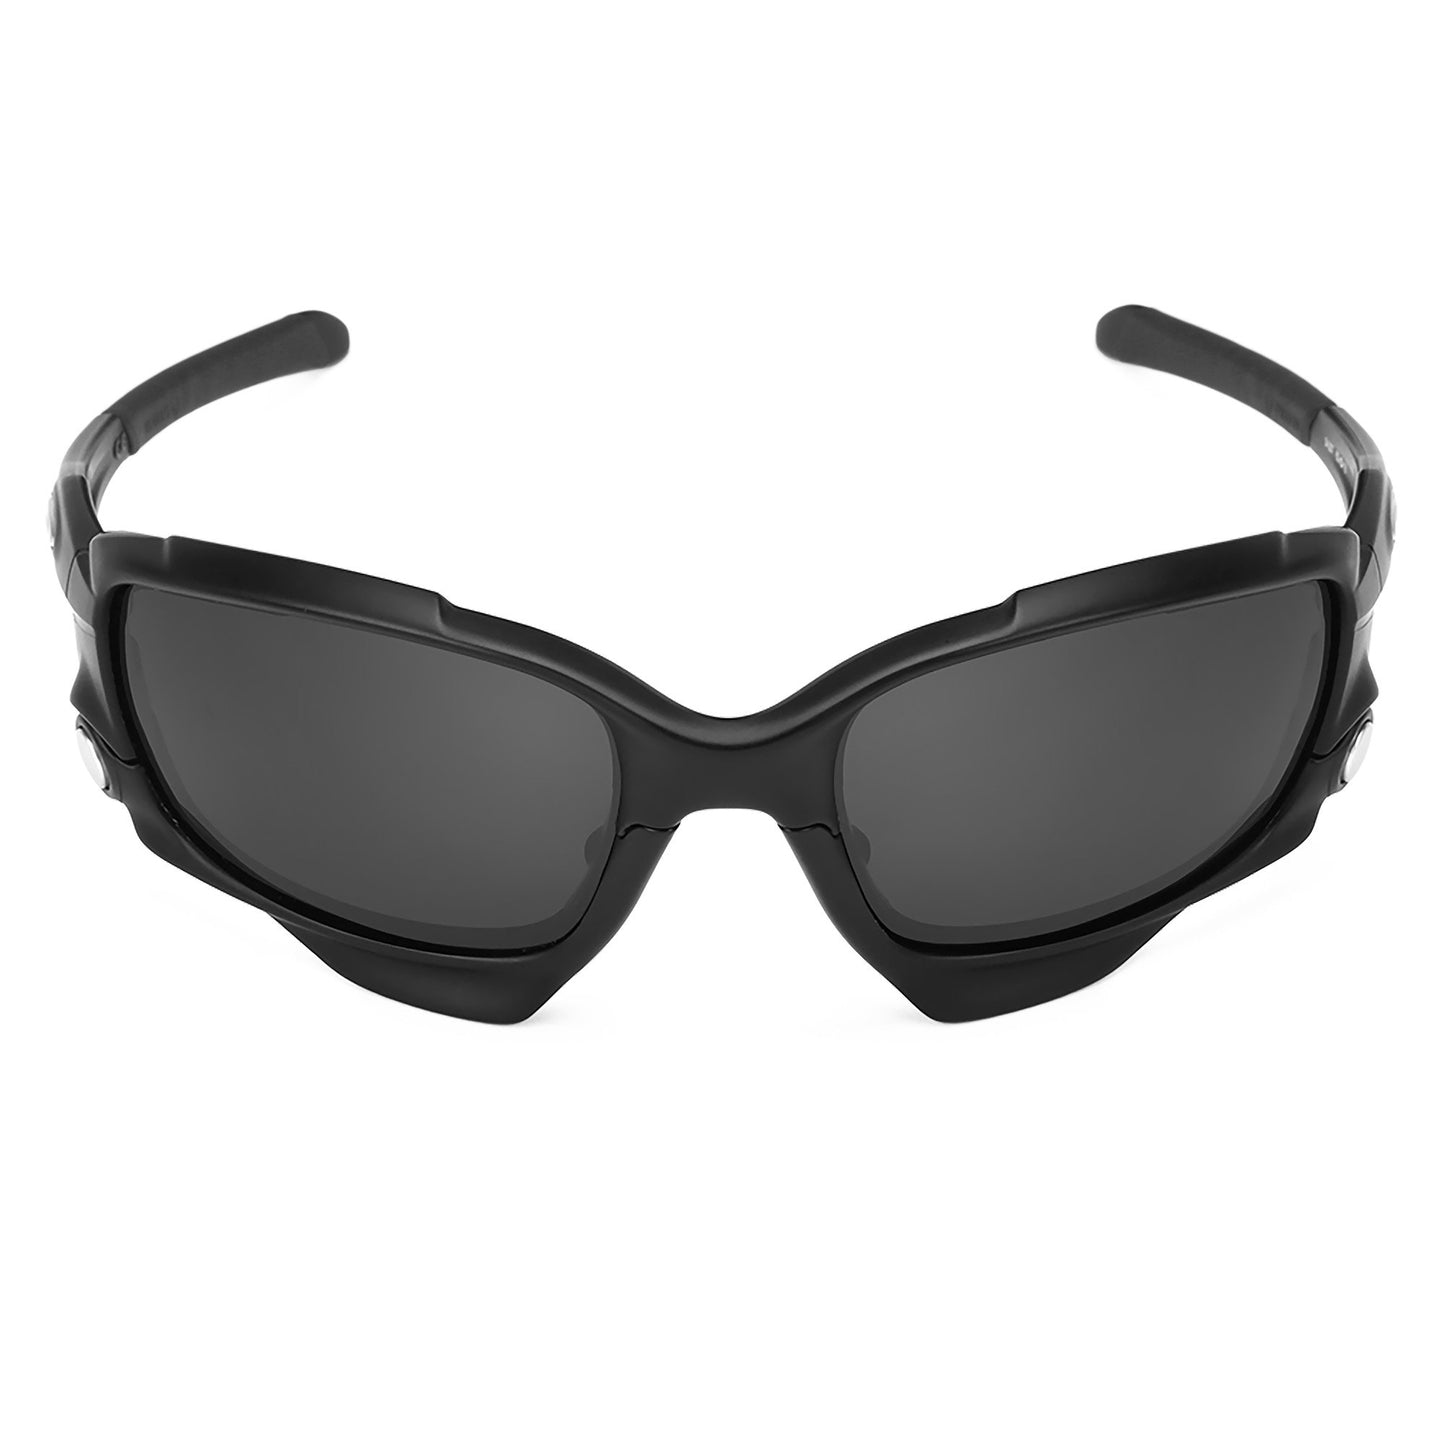 Revant black rubber kit installed on Oakley Jawbone sunglasses